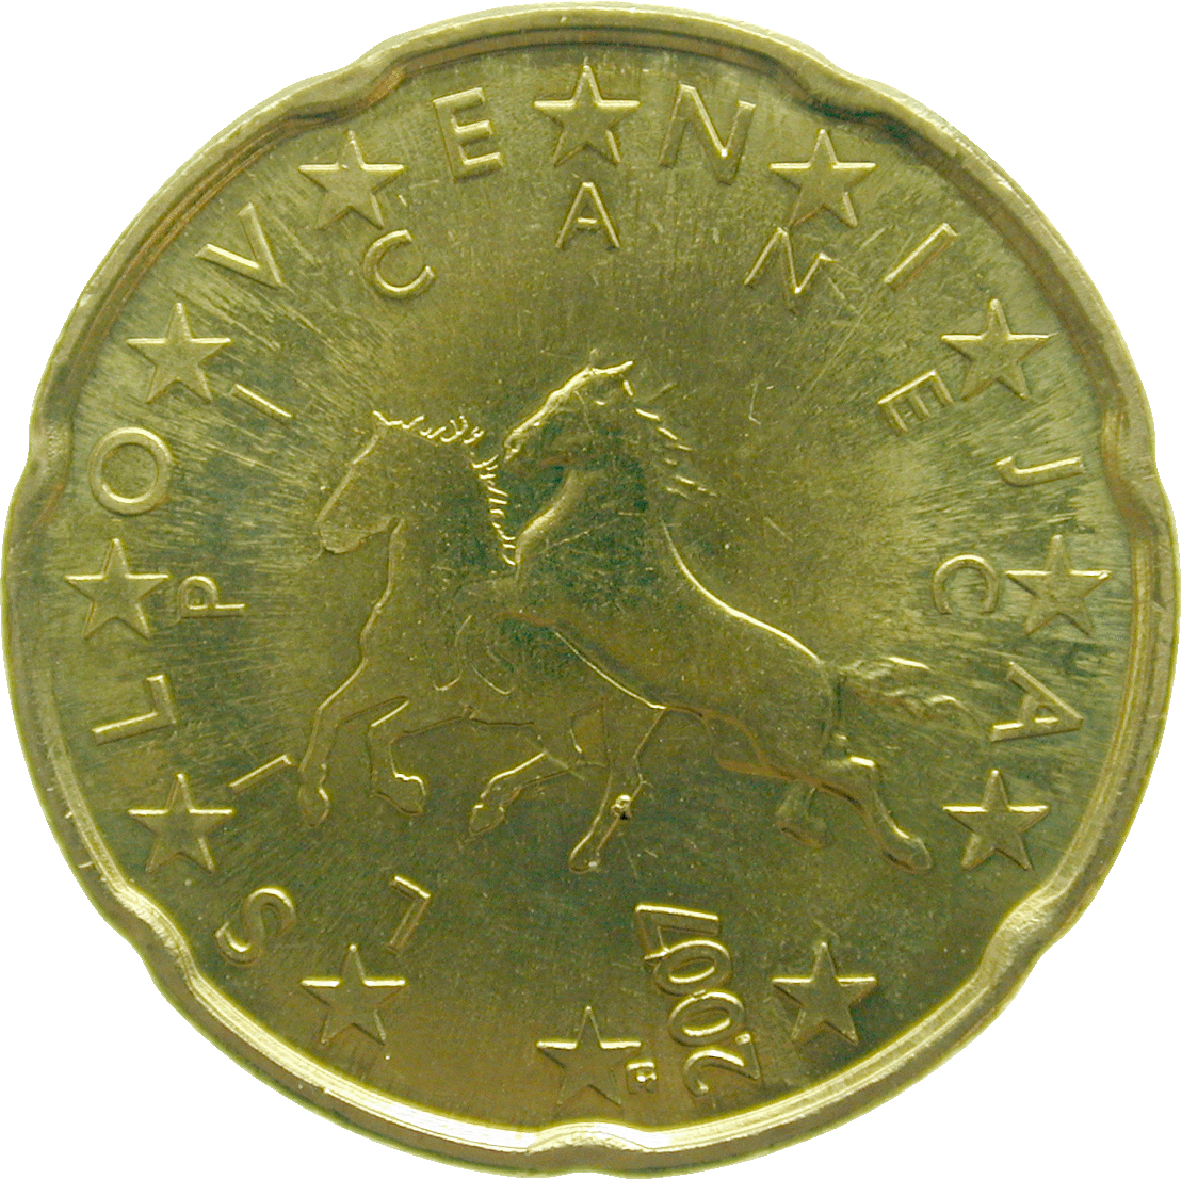 Republik Slowenien, 20 Eurocent 2008 (reverse)